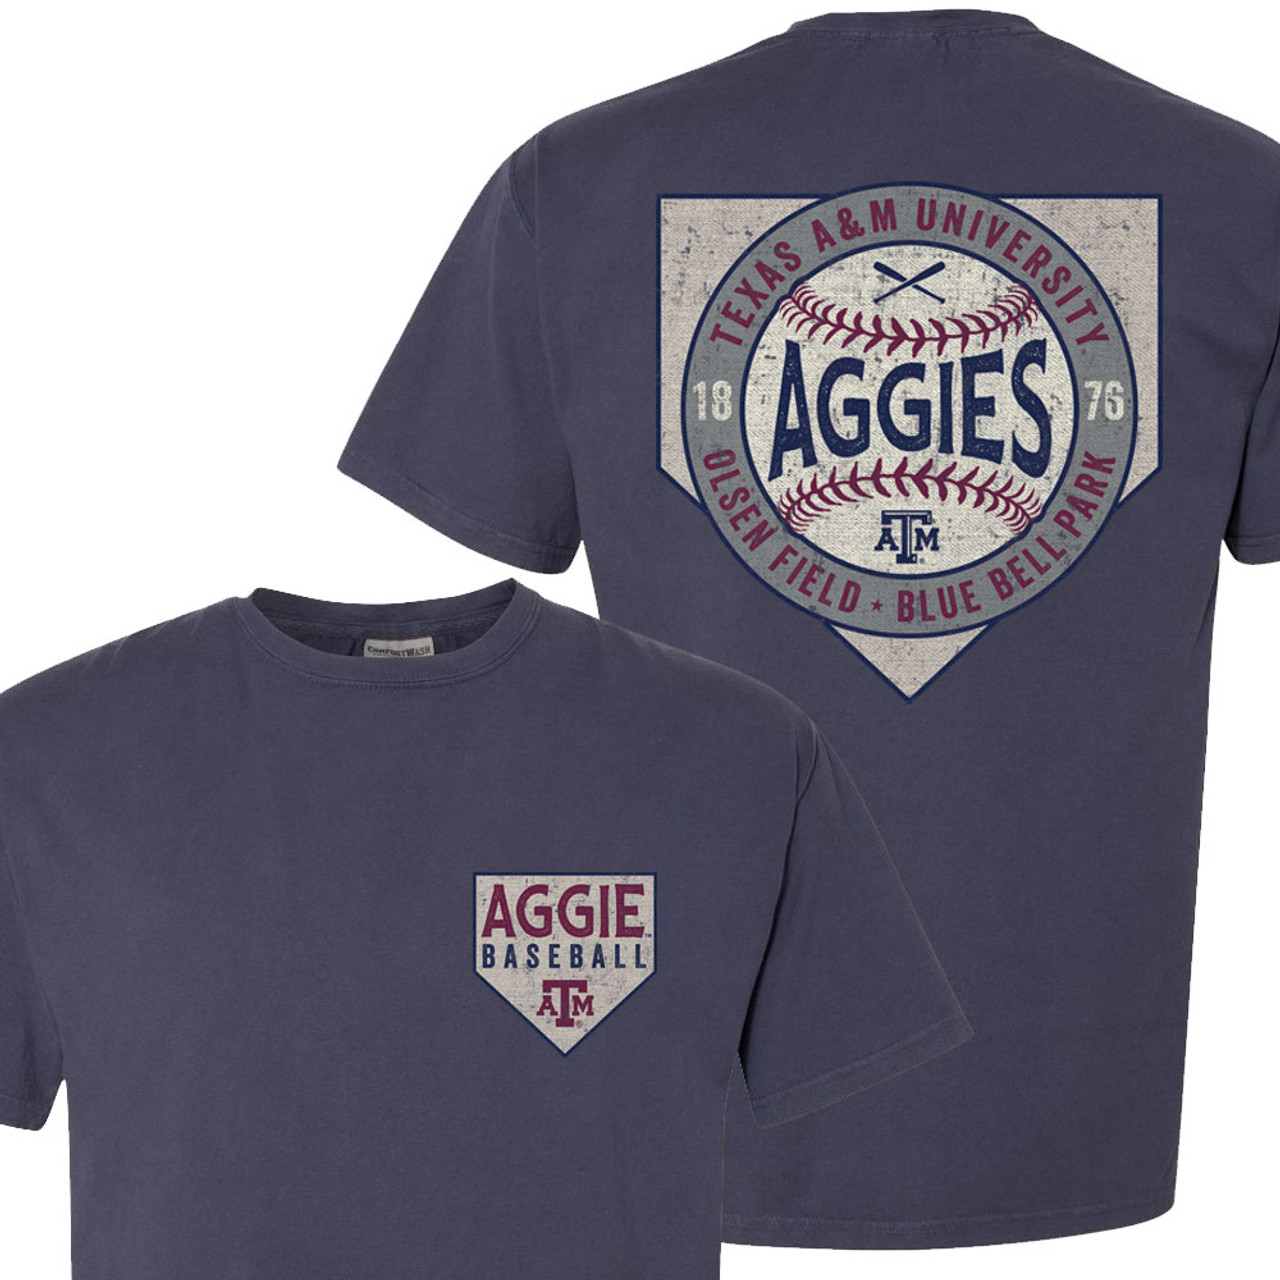 Aggies Baseball Jersey –